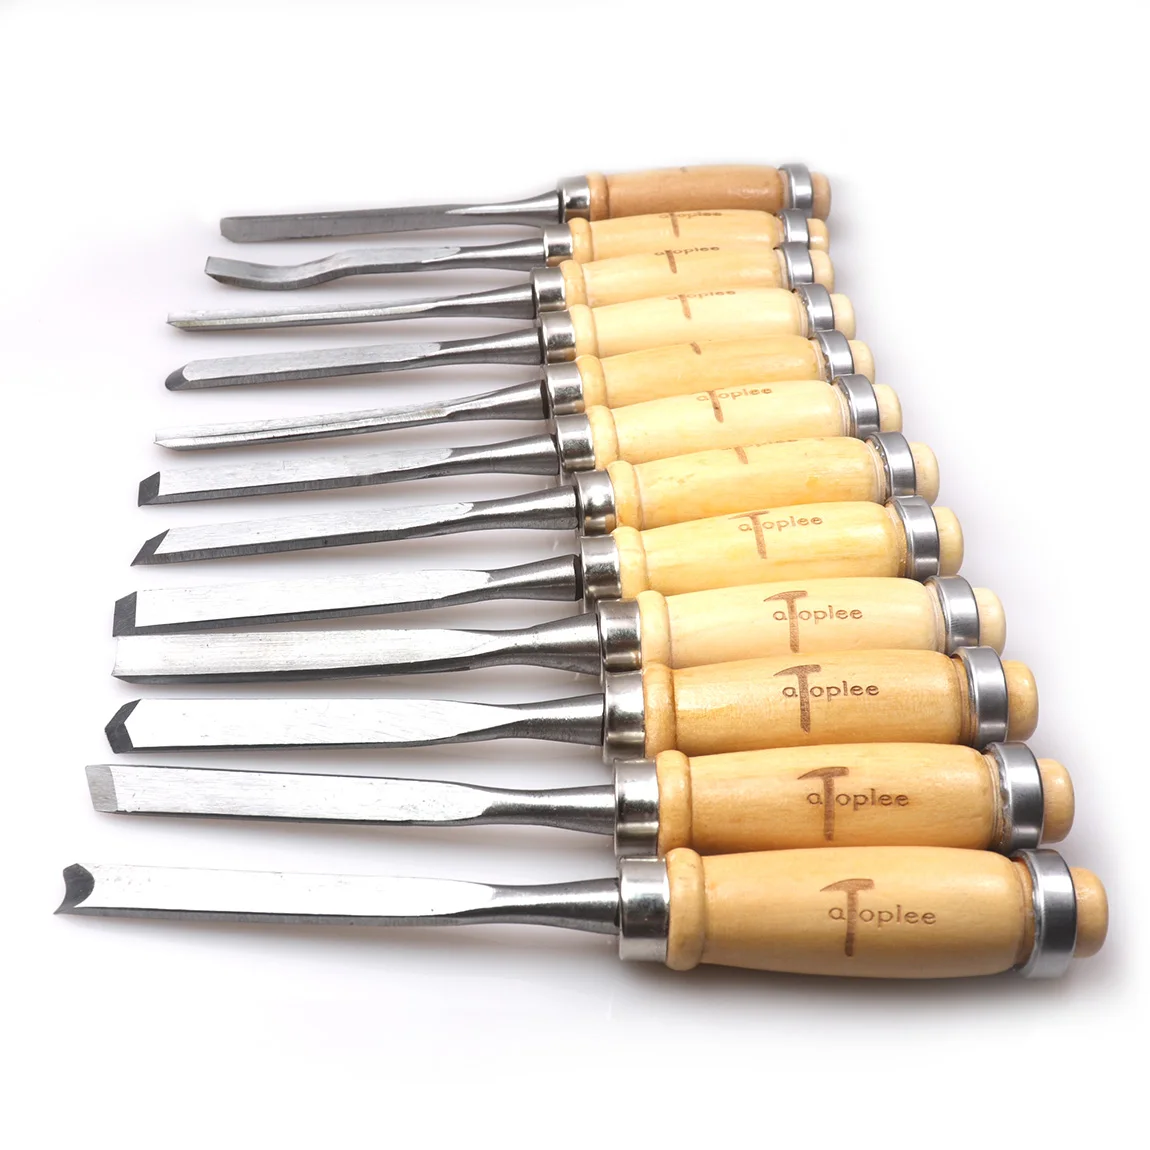 cincel profesional Juego de cinceles para madera tallado de madera bricolaje 12 unidades cuchillo para tallar madera 